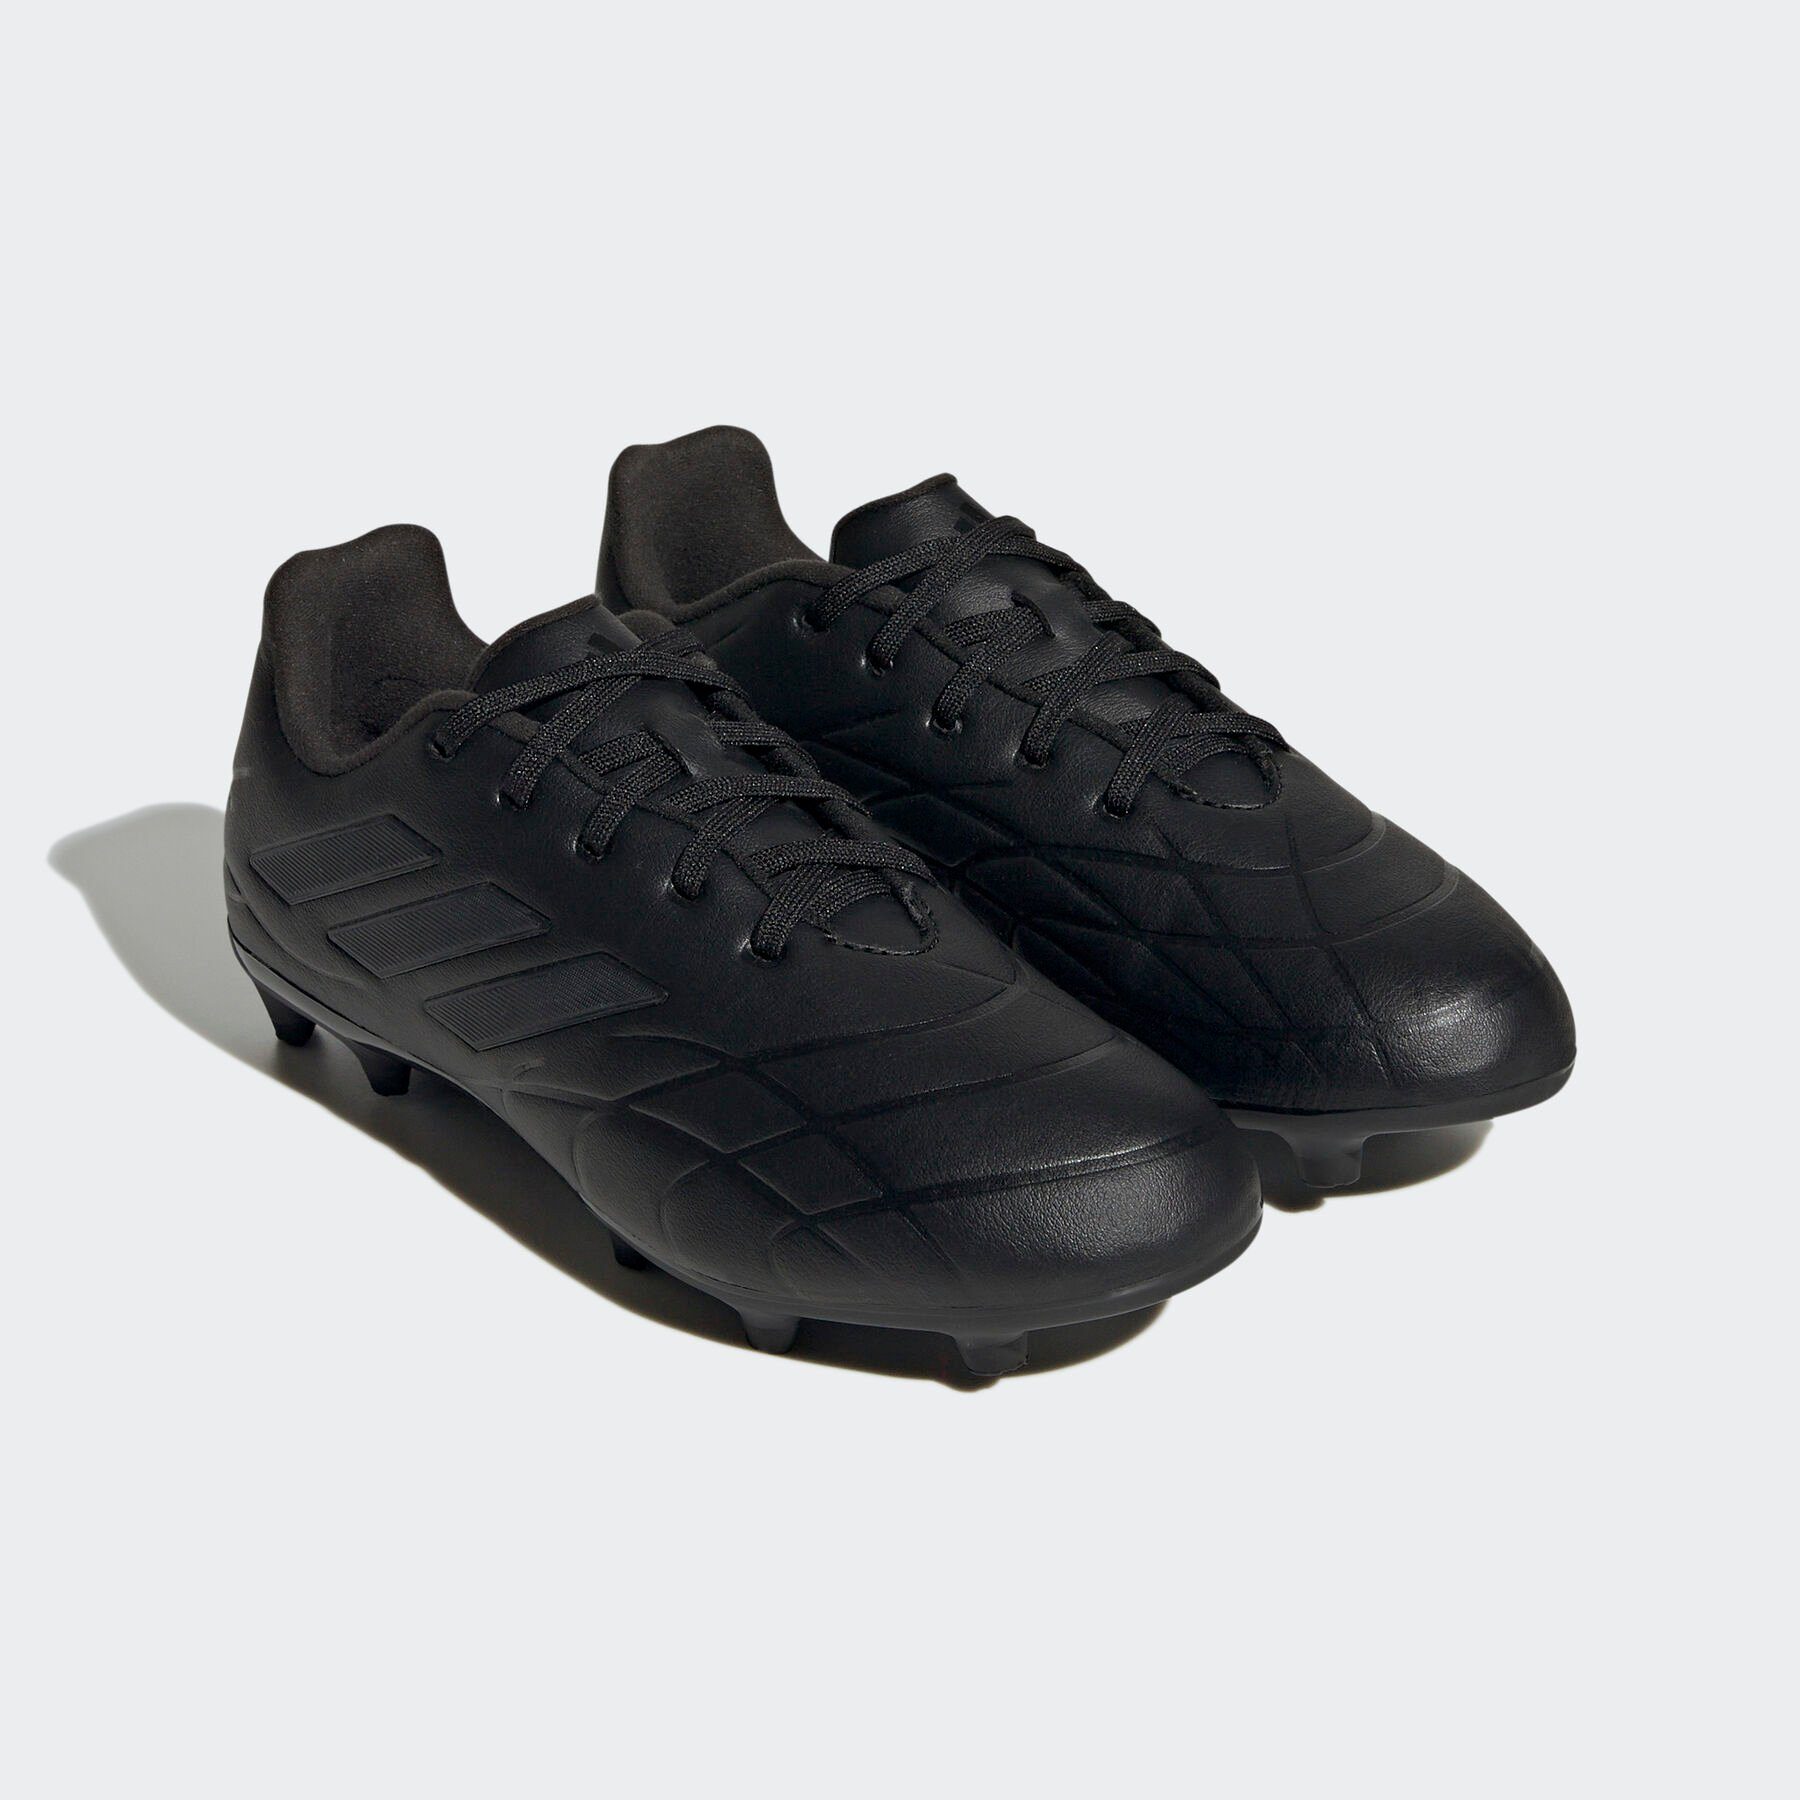 Core Core Black Fußballschuh COPA / Performance PURE.3 / FG Core adidas Black Black